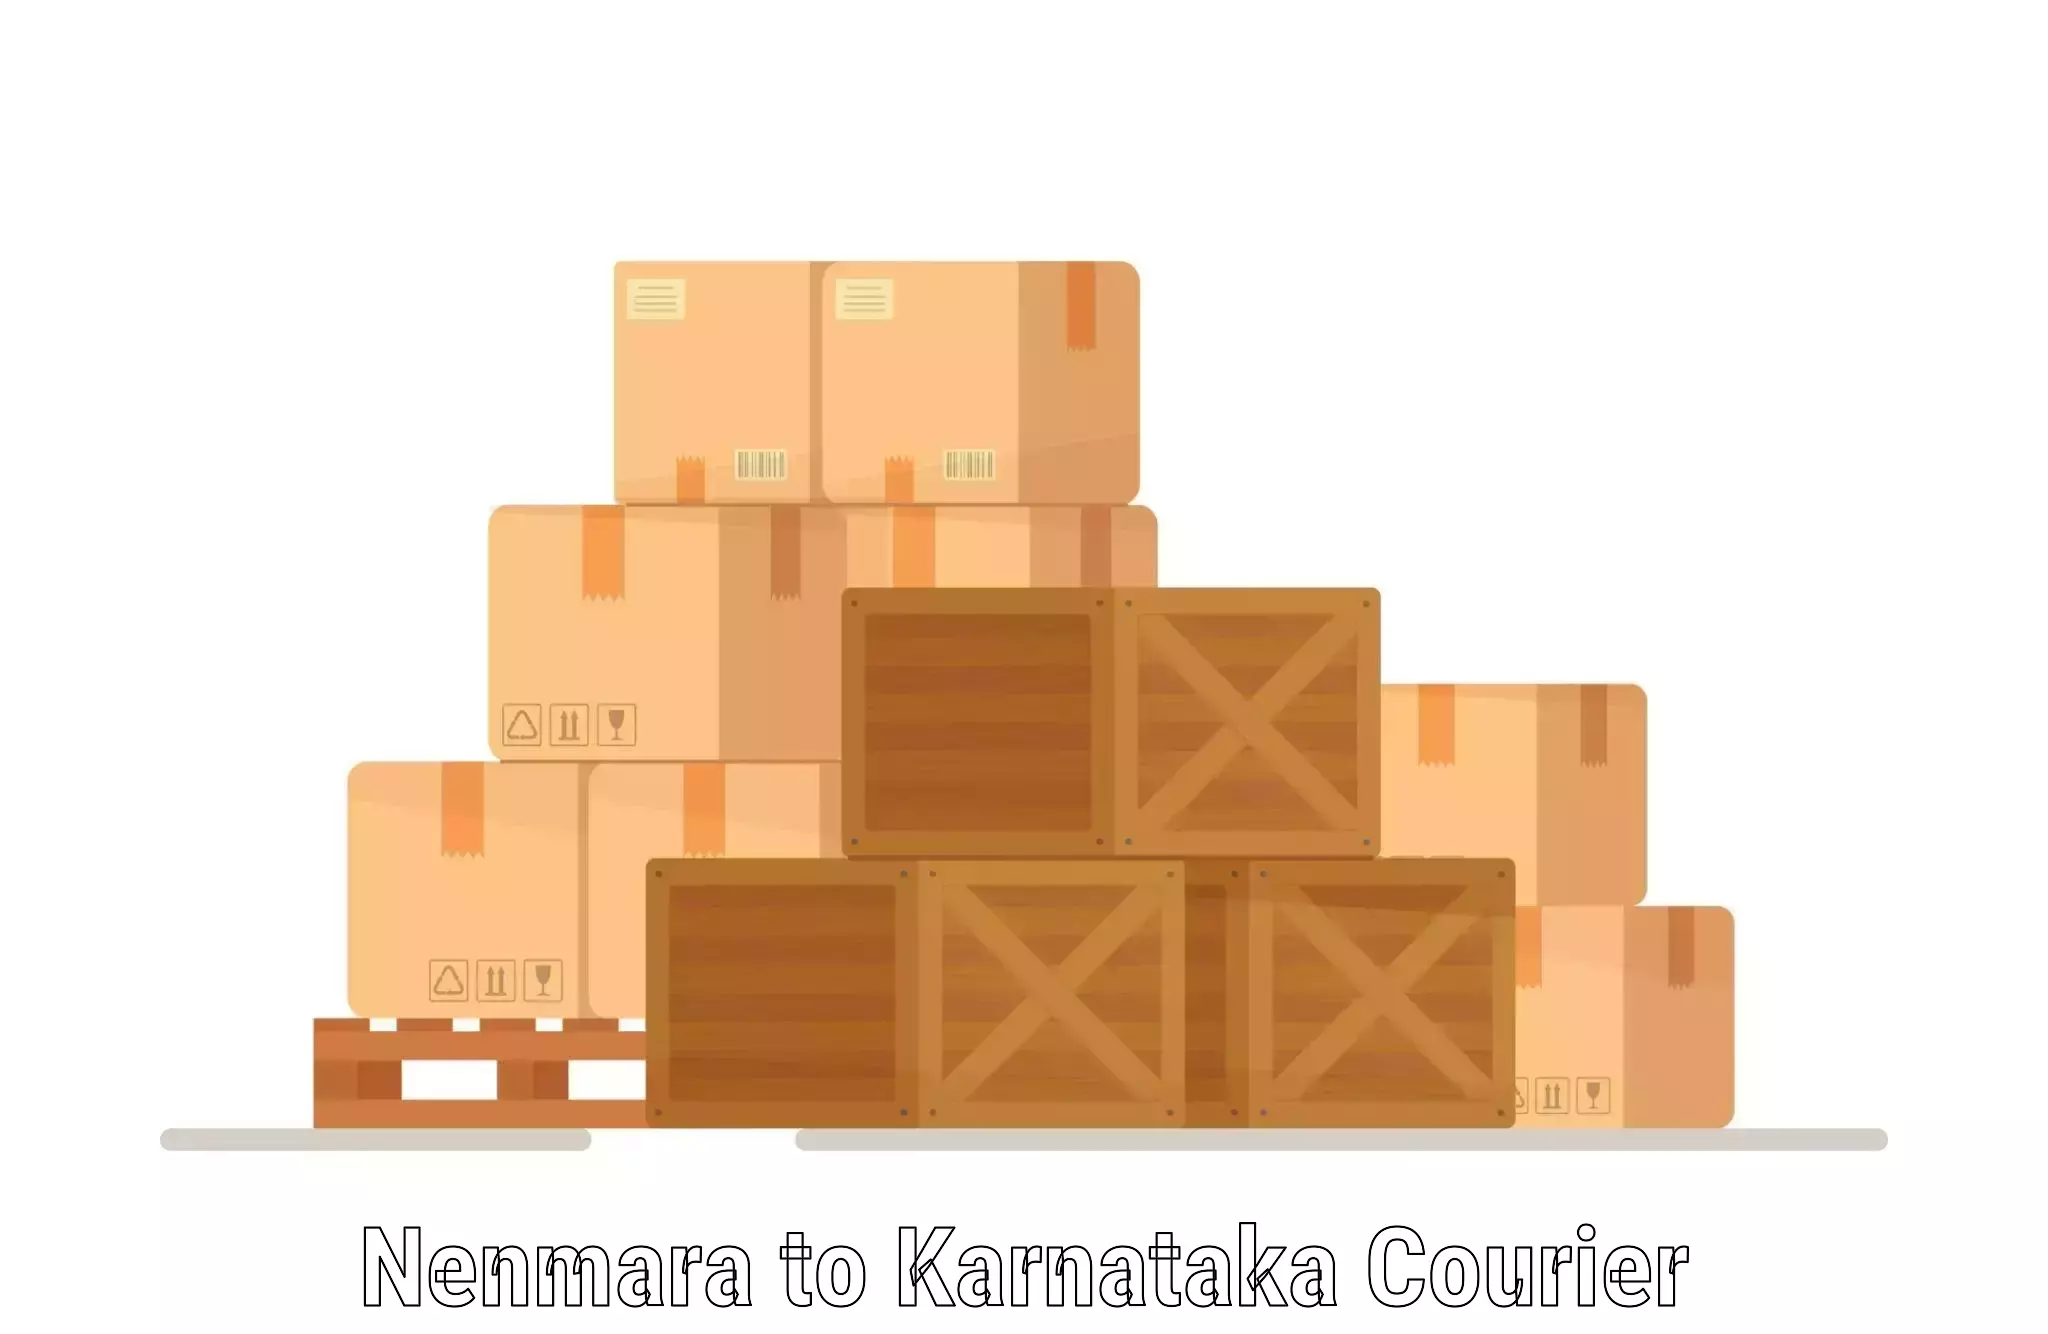 Courier service comparison Nenmara to Bangalore